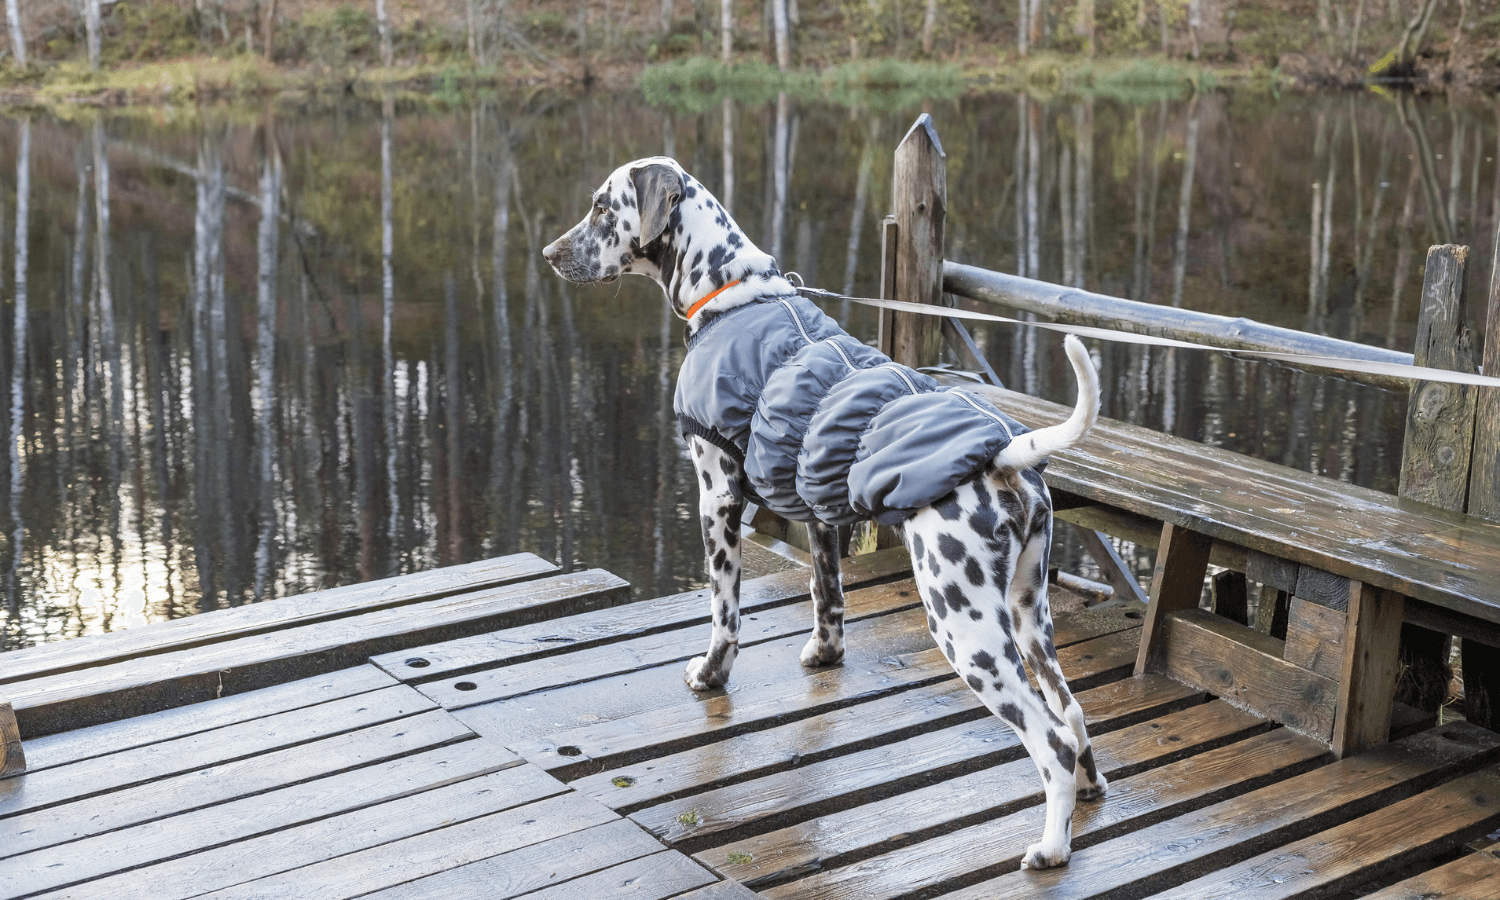 Herbstzubehör für den Hund beinhaltet auch einen Hundemantel. Der Dalmatiner im Bild trägt ein warm gefüttertes Modell. © iStock.com